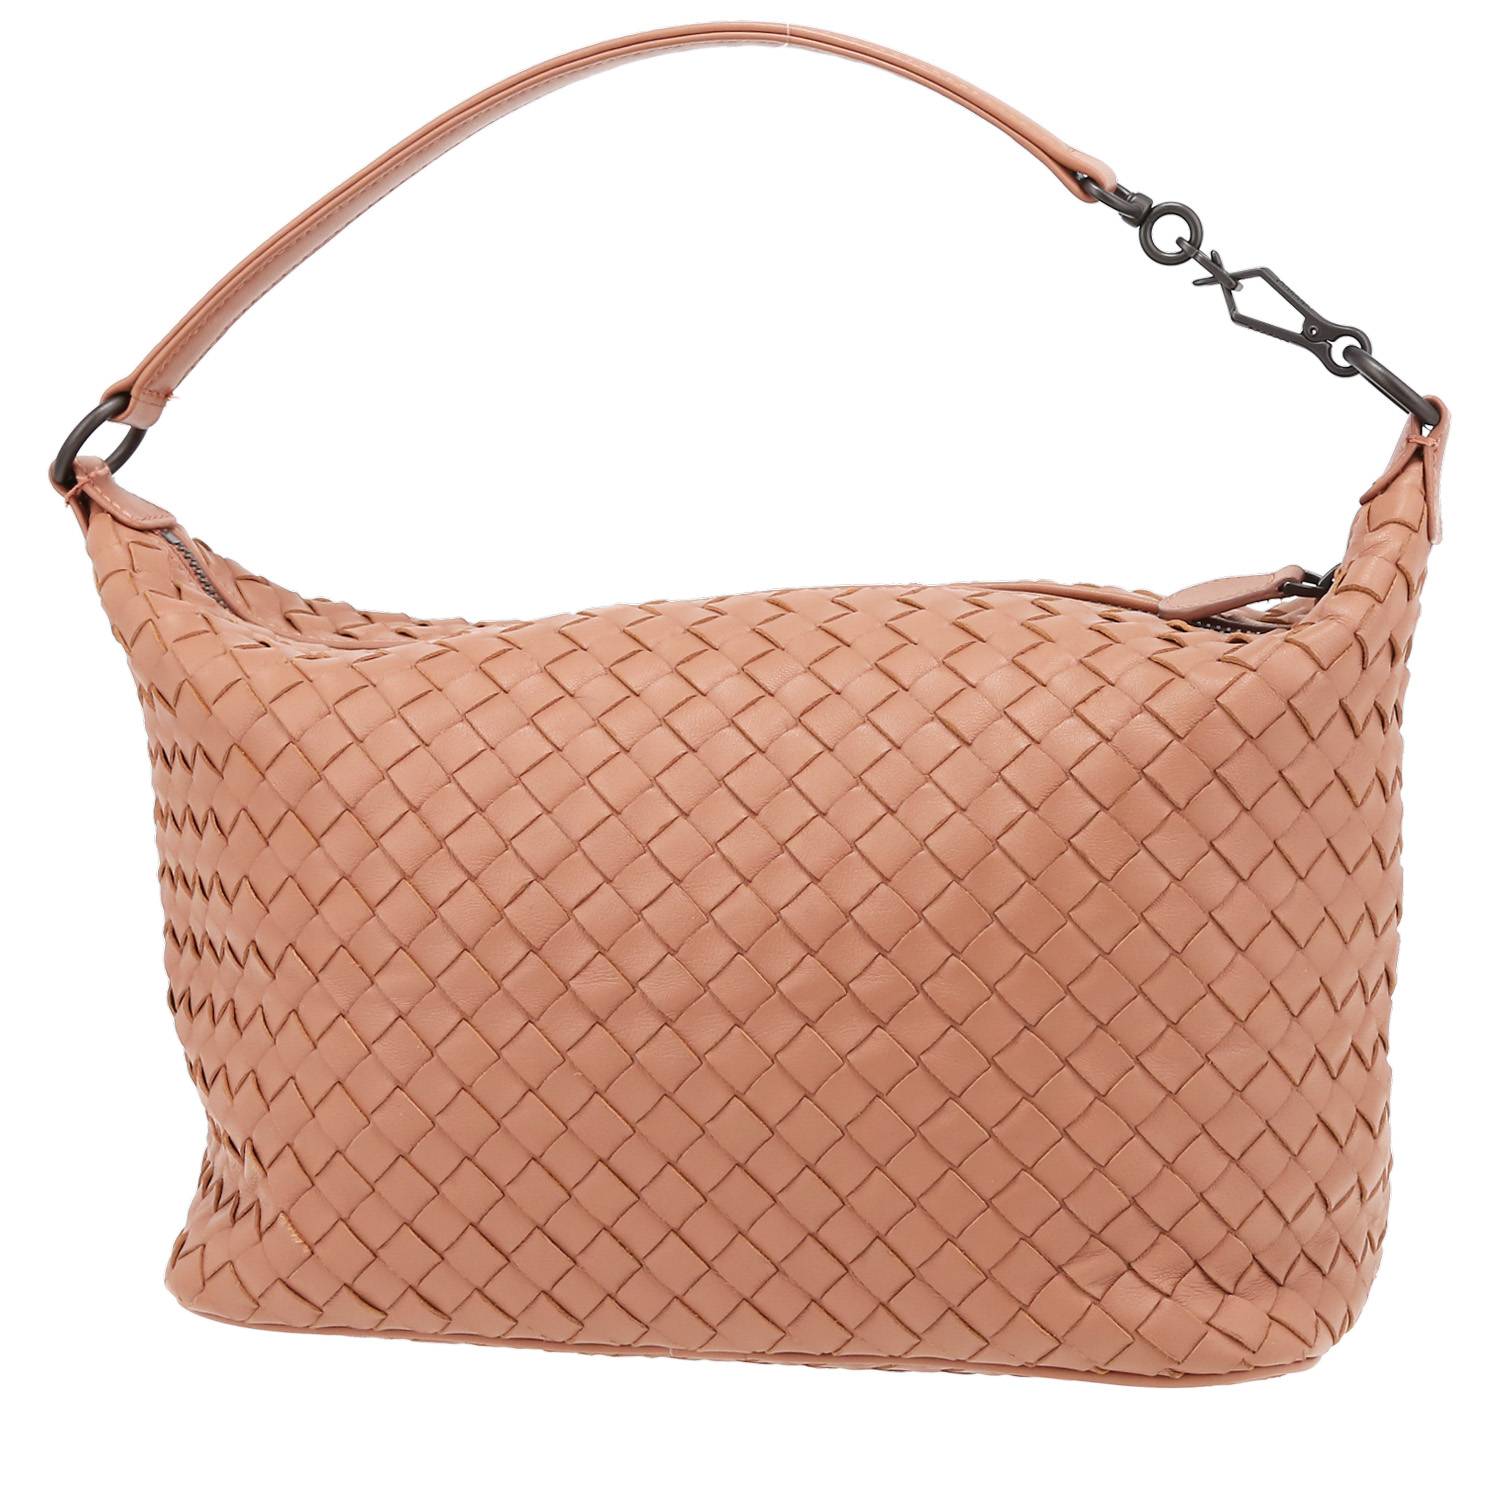 Bottega Veneta Taupe Intrecciatto Leather Small Shoulder Bag with